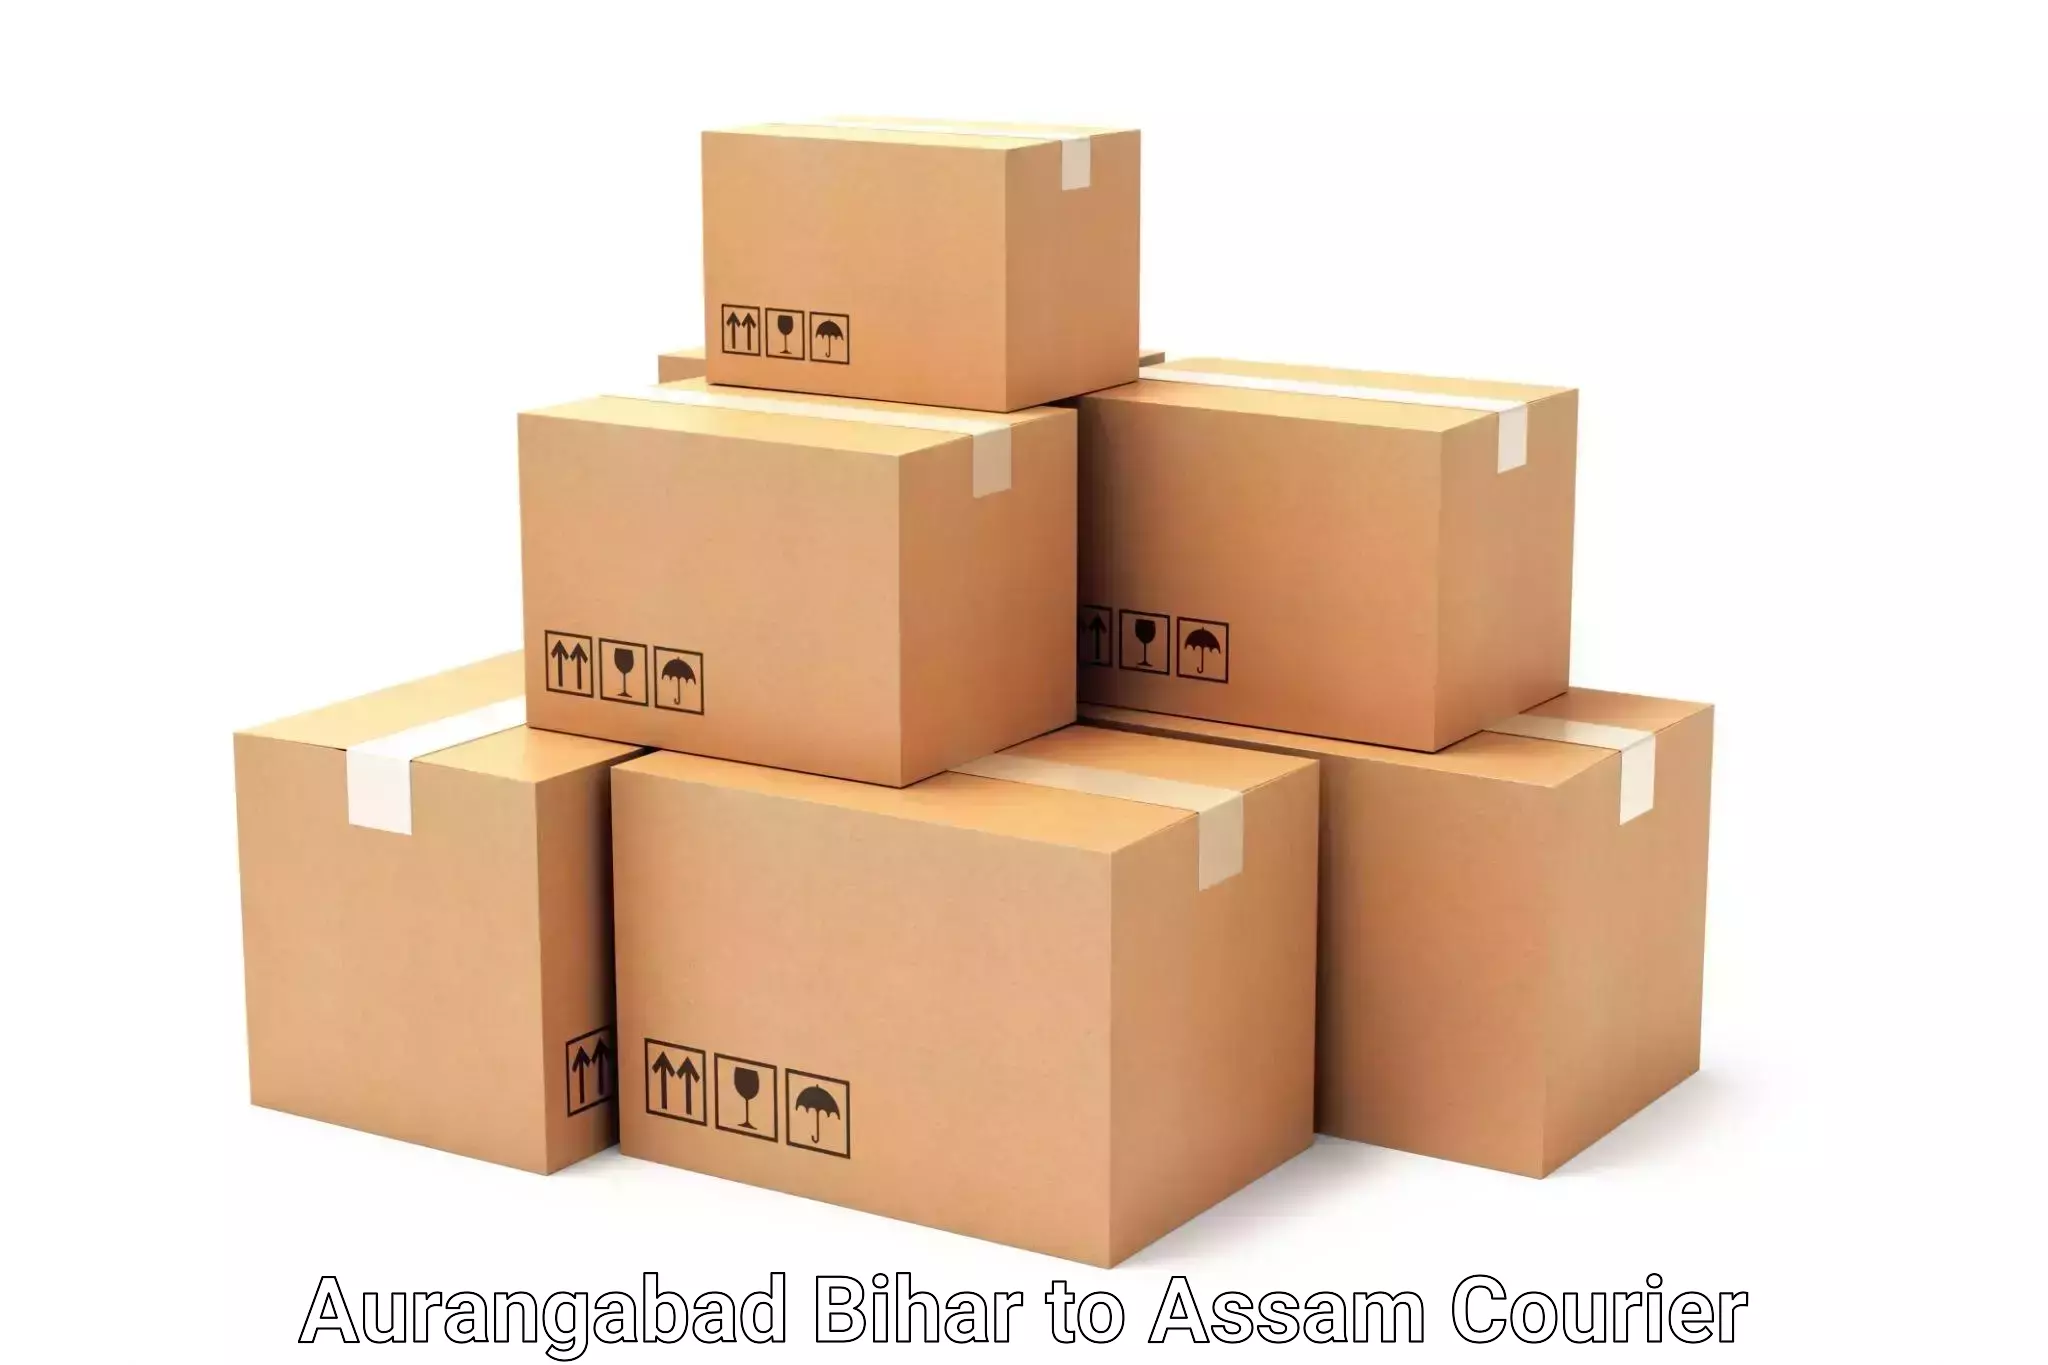 Personalized luggage shipping Aurangabad Bihar to Assam